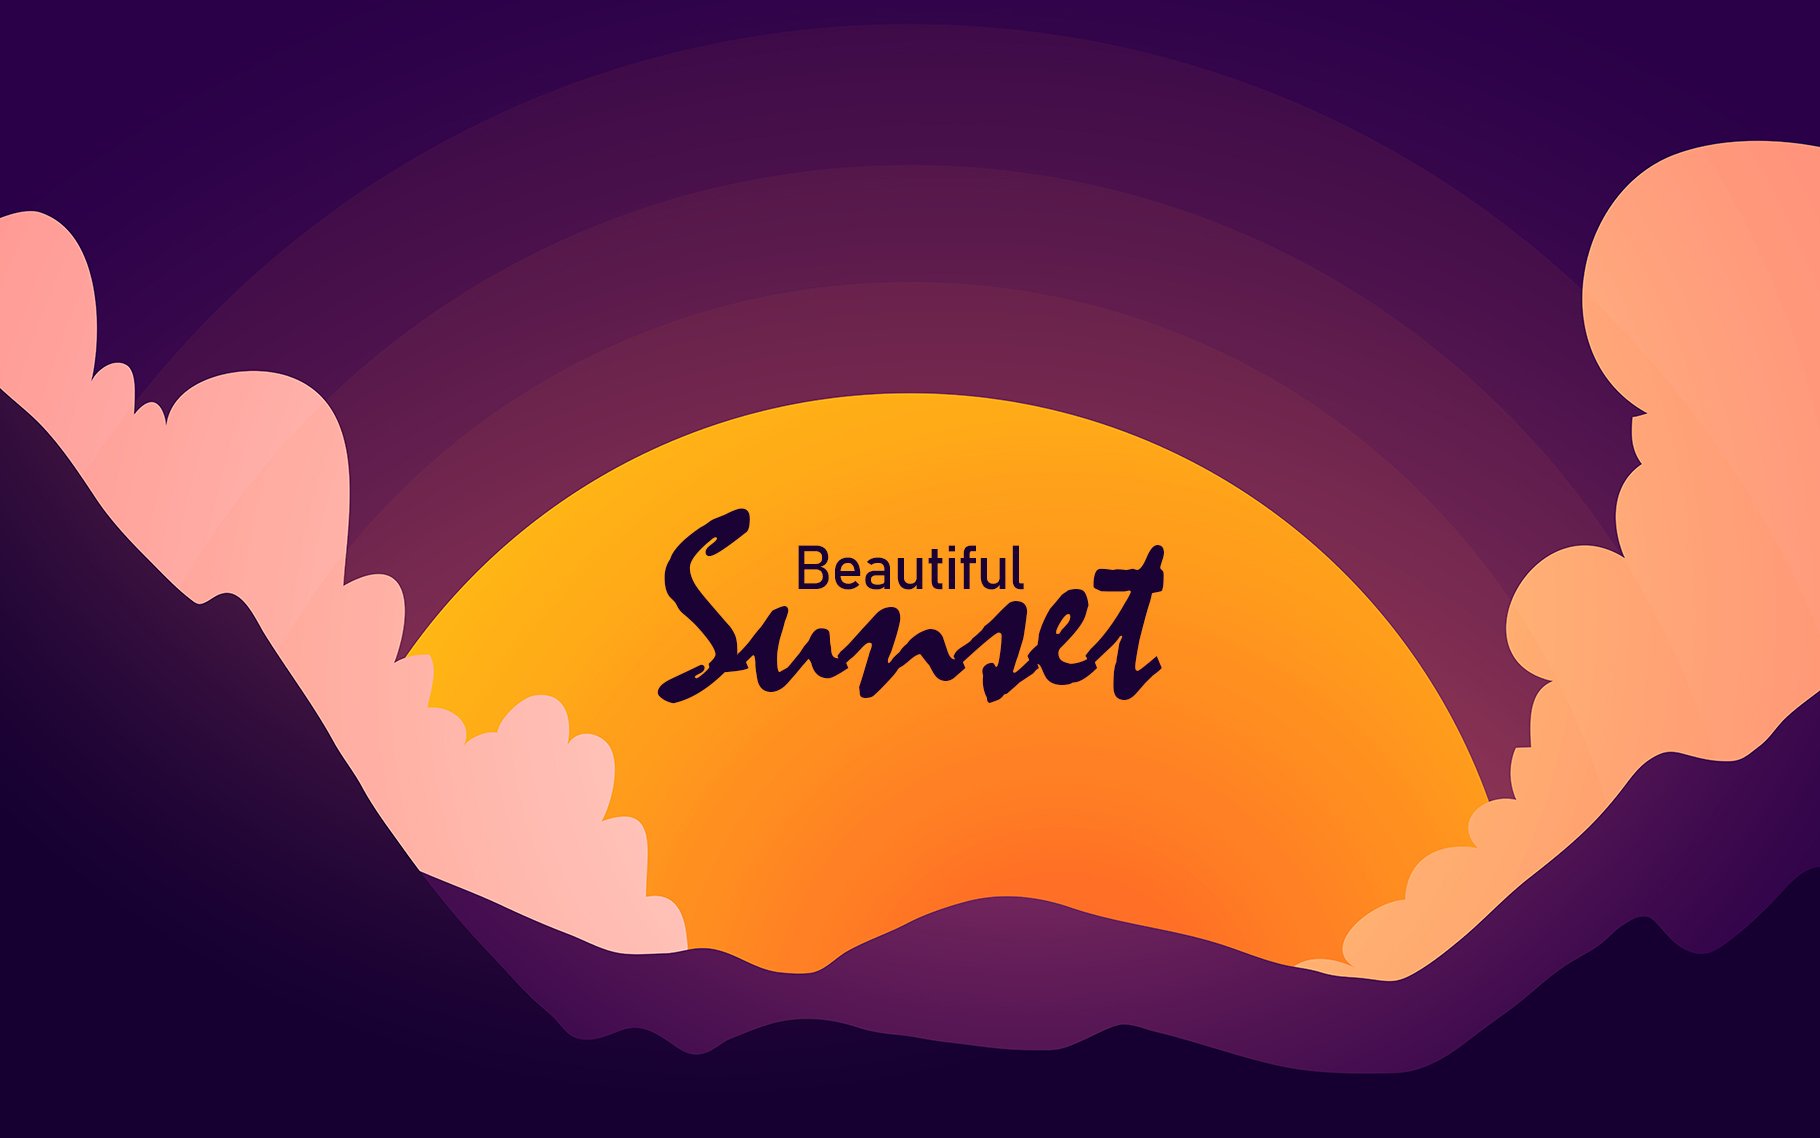 Beautiful orange sunset cover image.